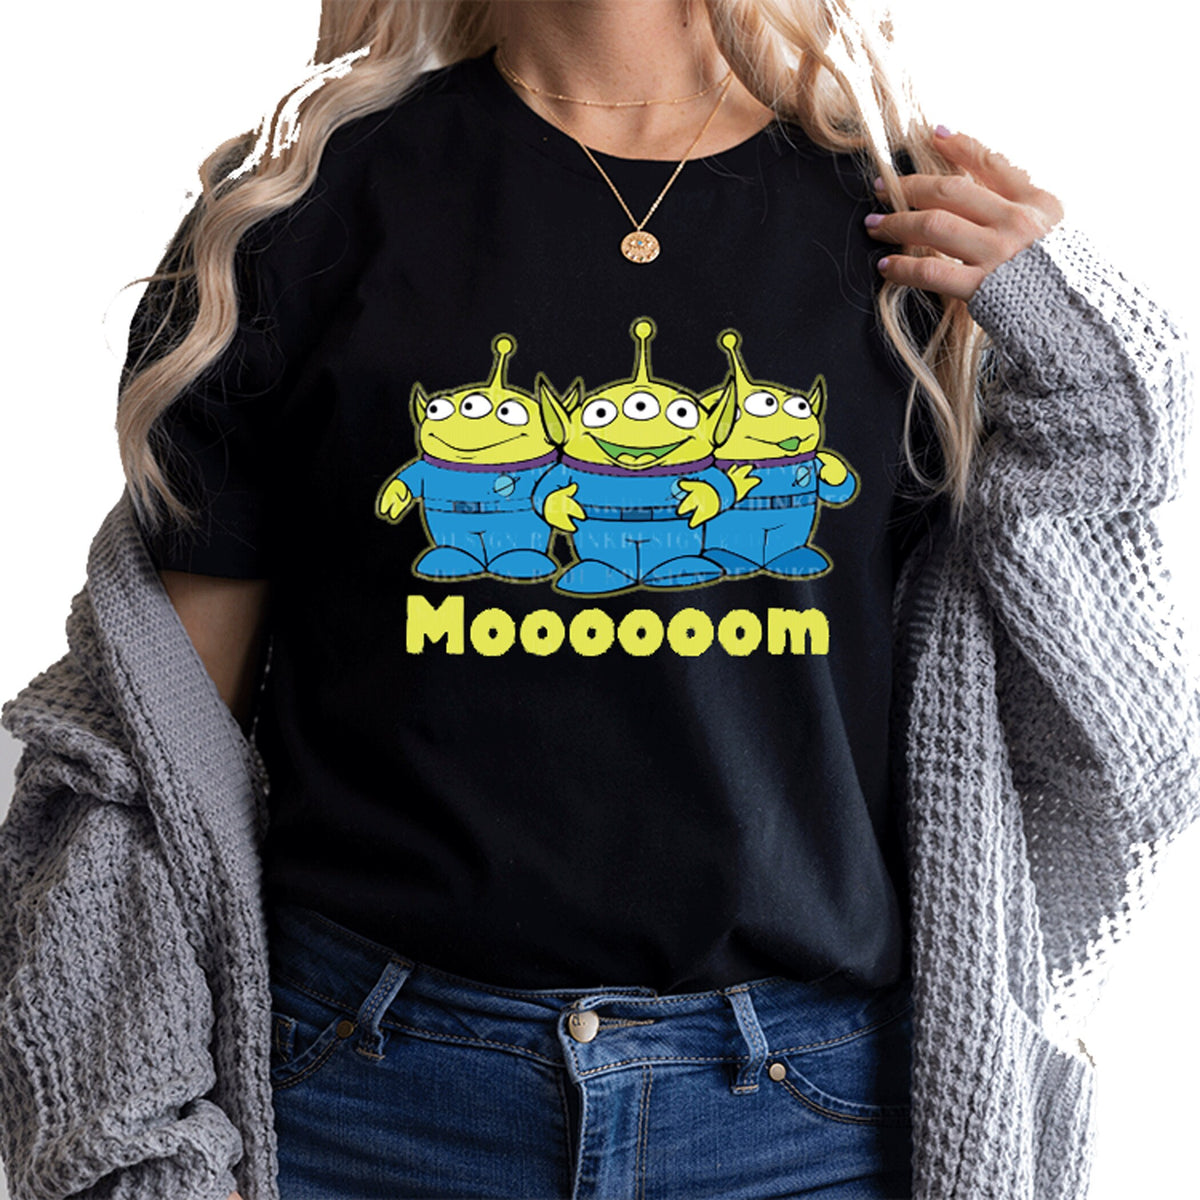 Alien Mom Shirt, Retro Alien Mom Shirt, Cute Alien Shirt, Alien Lover Shirt, Alien Shirt for Women, Gift for Mom, Mom Shirt